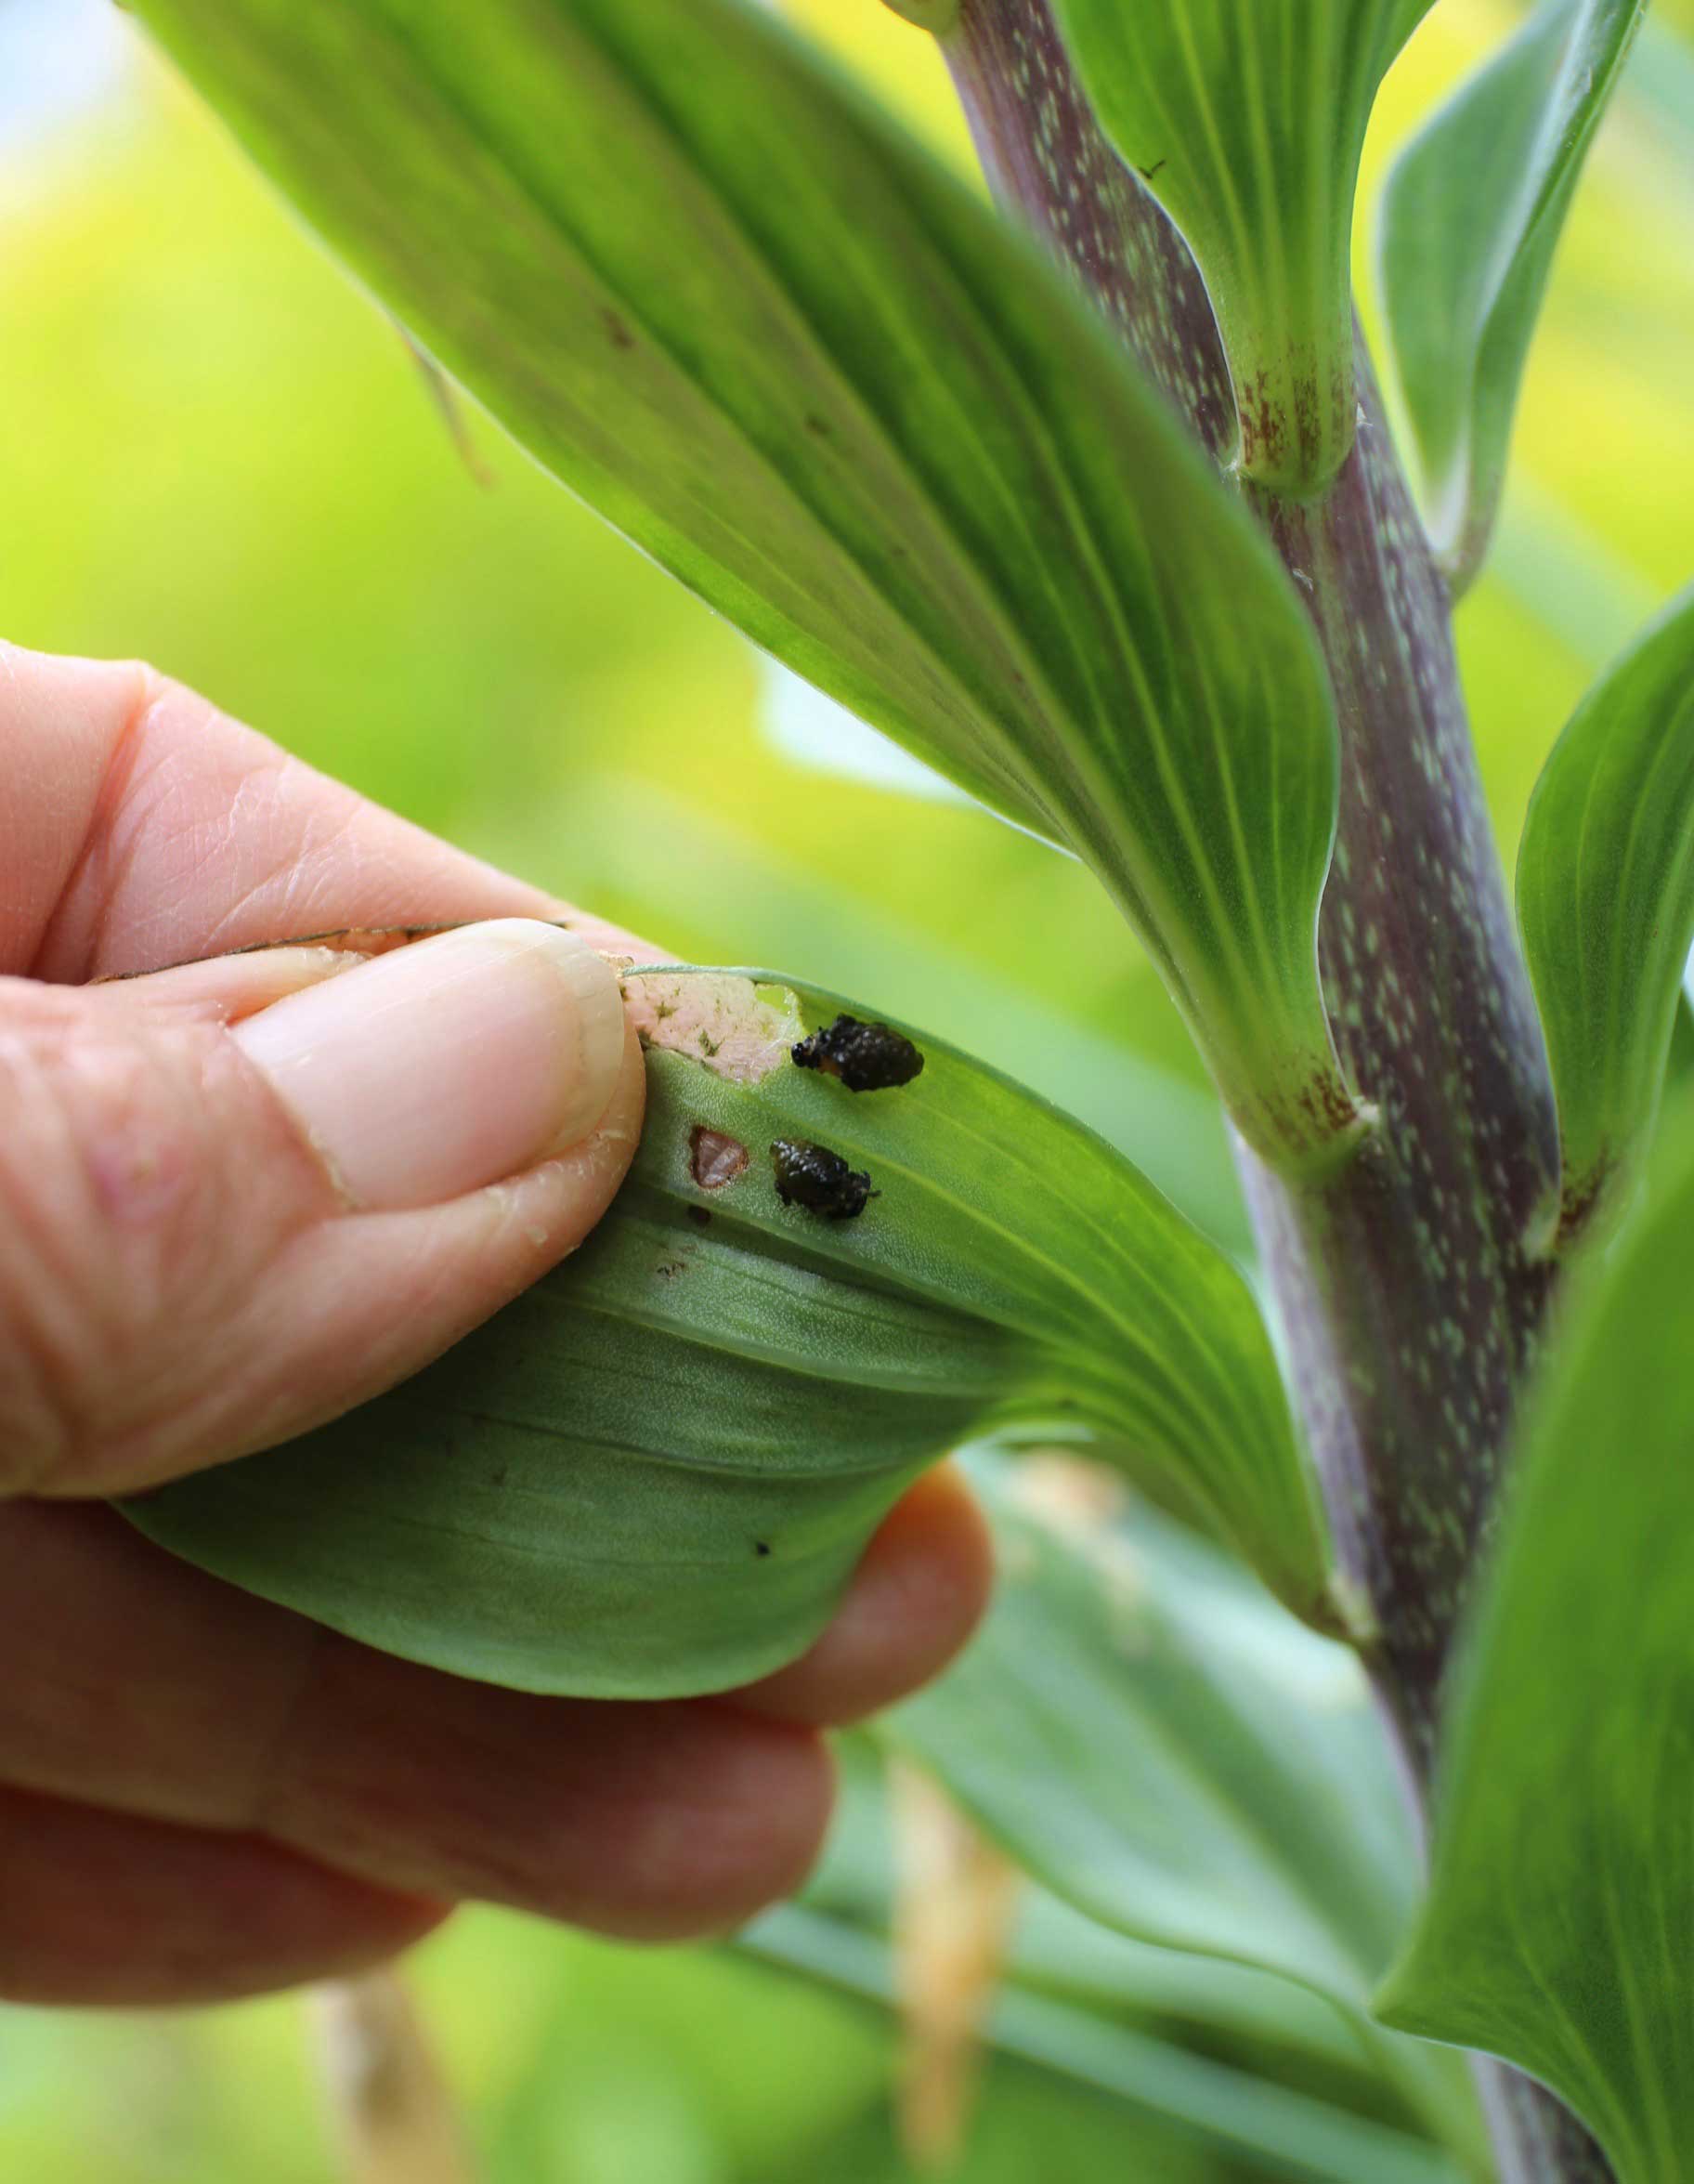 lily-leaf-beetle-larvae-1.jpg